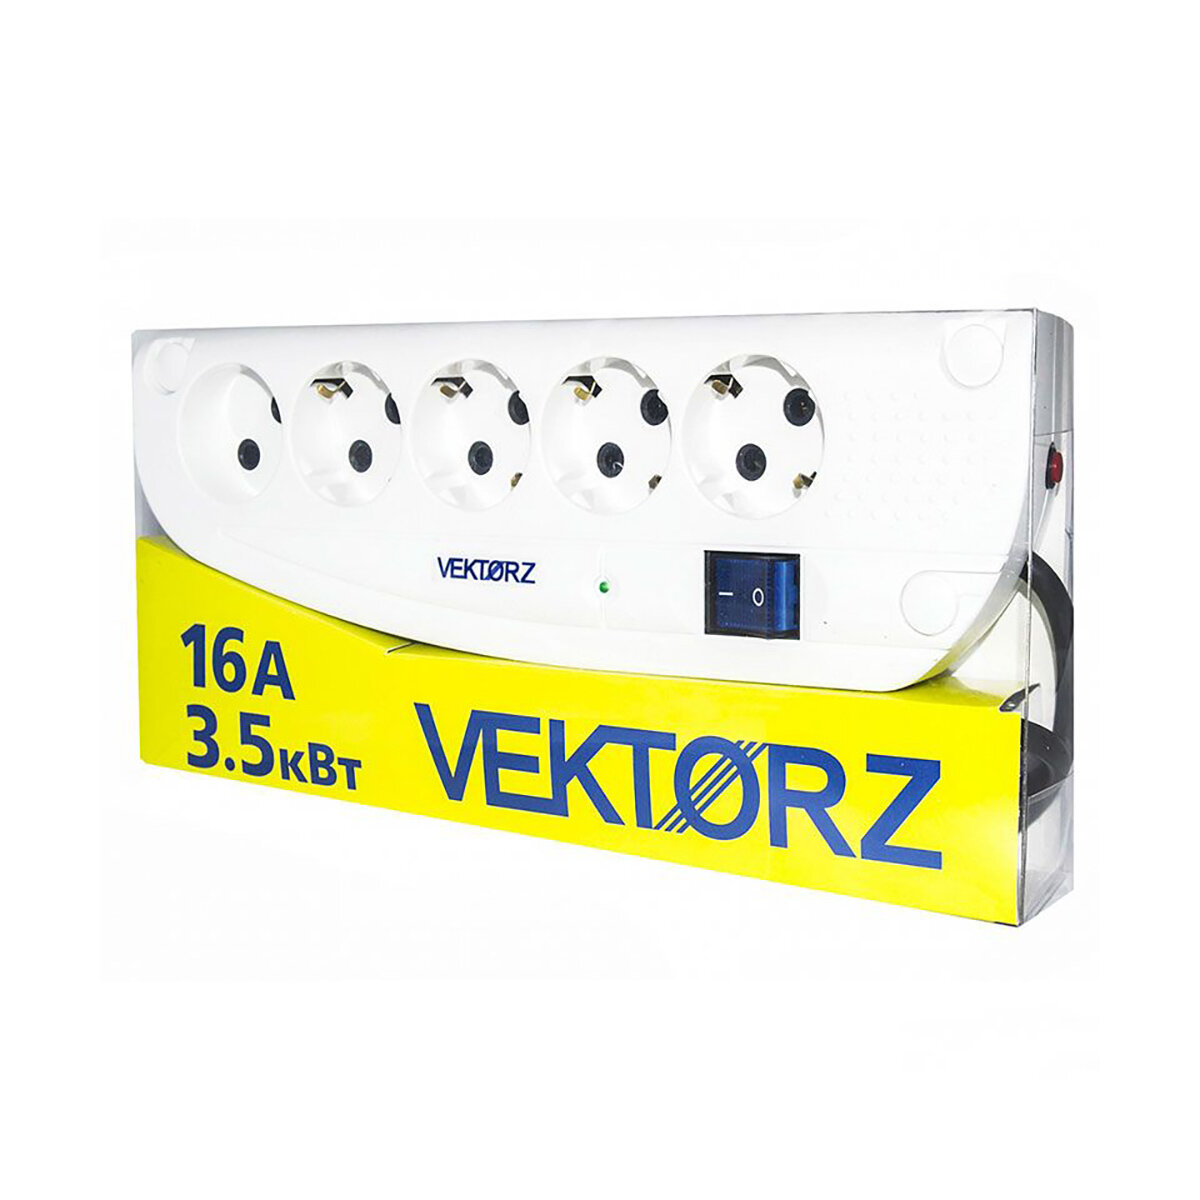 Сетевой фильтр Vektor Z, 3,5 кВт, 16А, 5 розеток (4 с заземлением), 3 м, белый